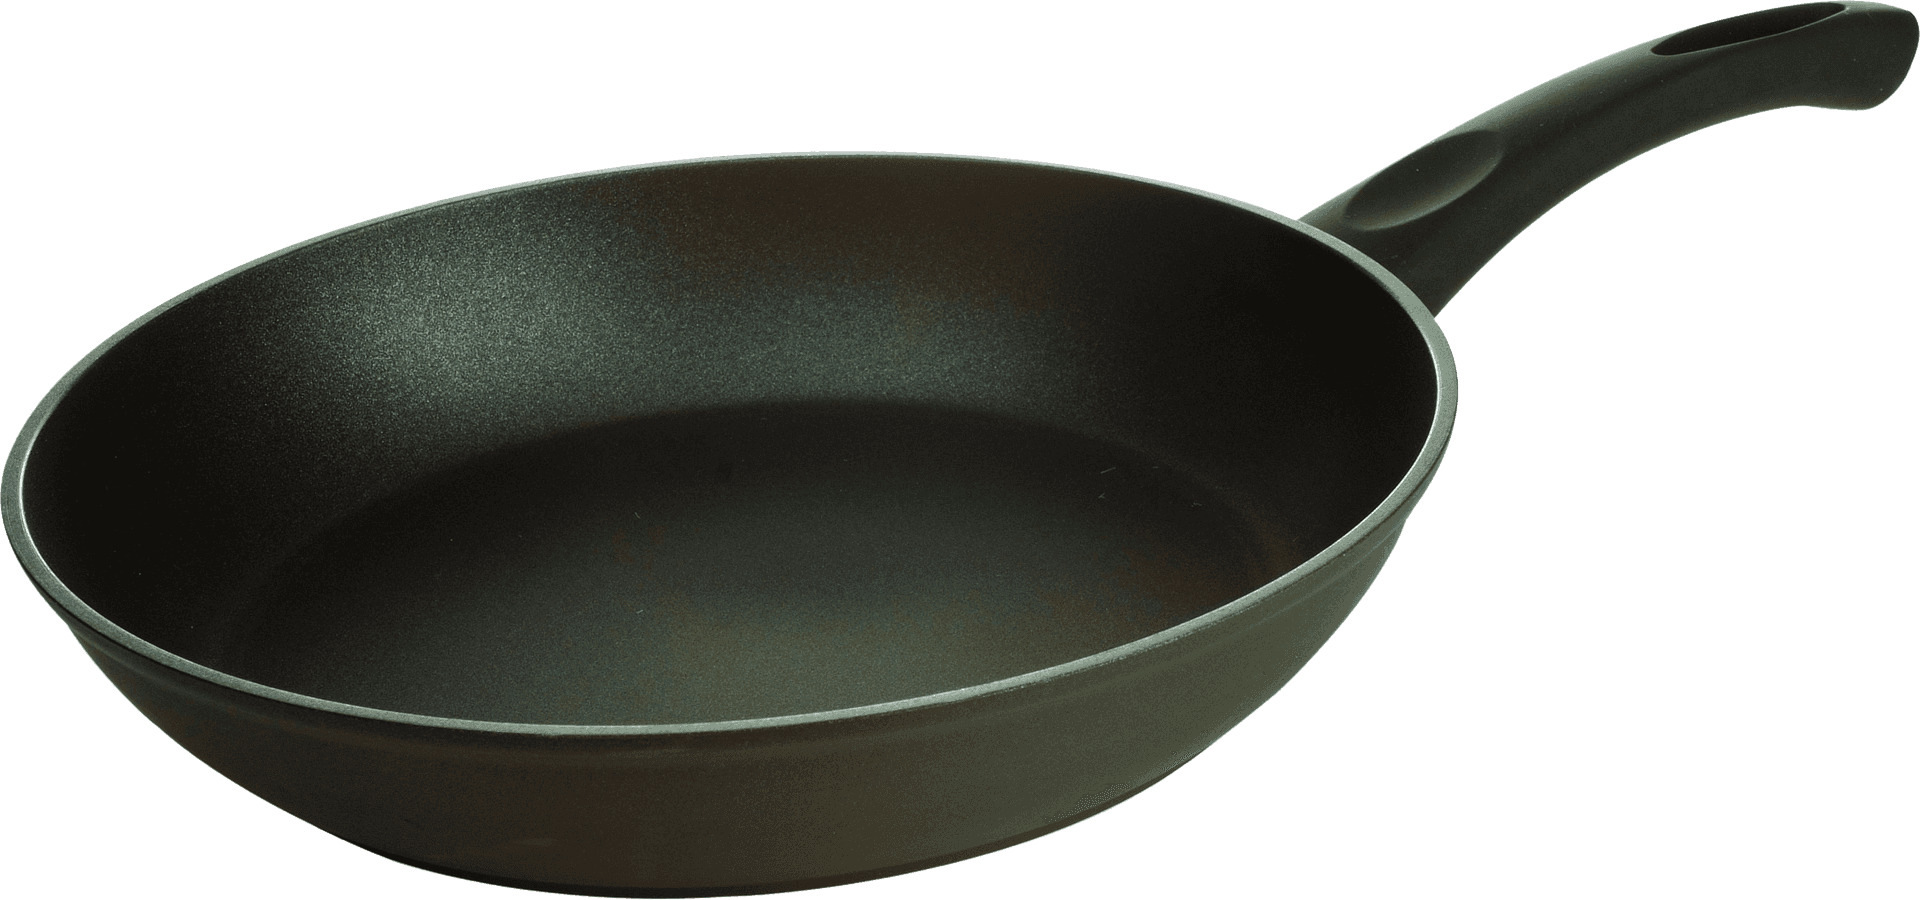 Black Nonstick Frying Pan PNG image